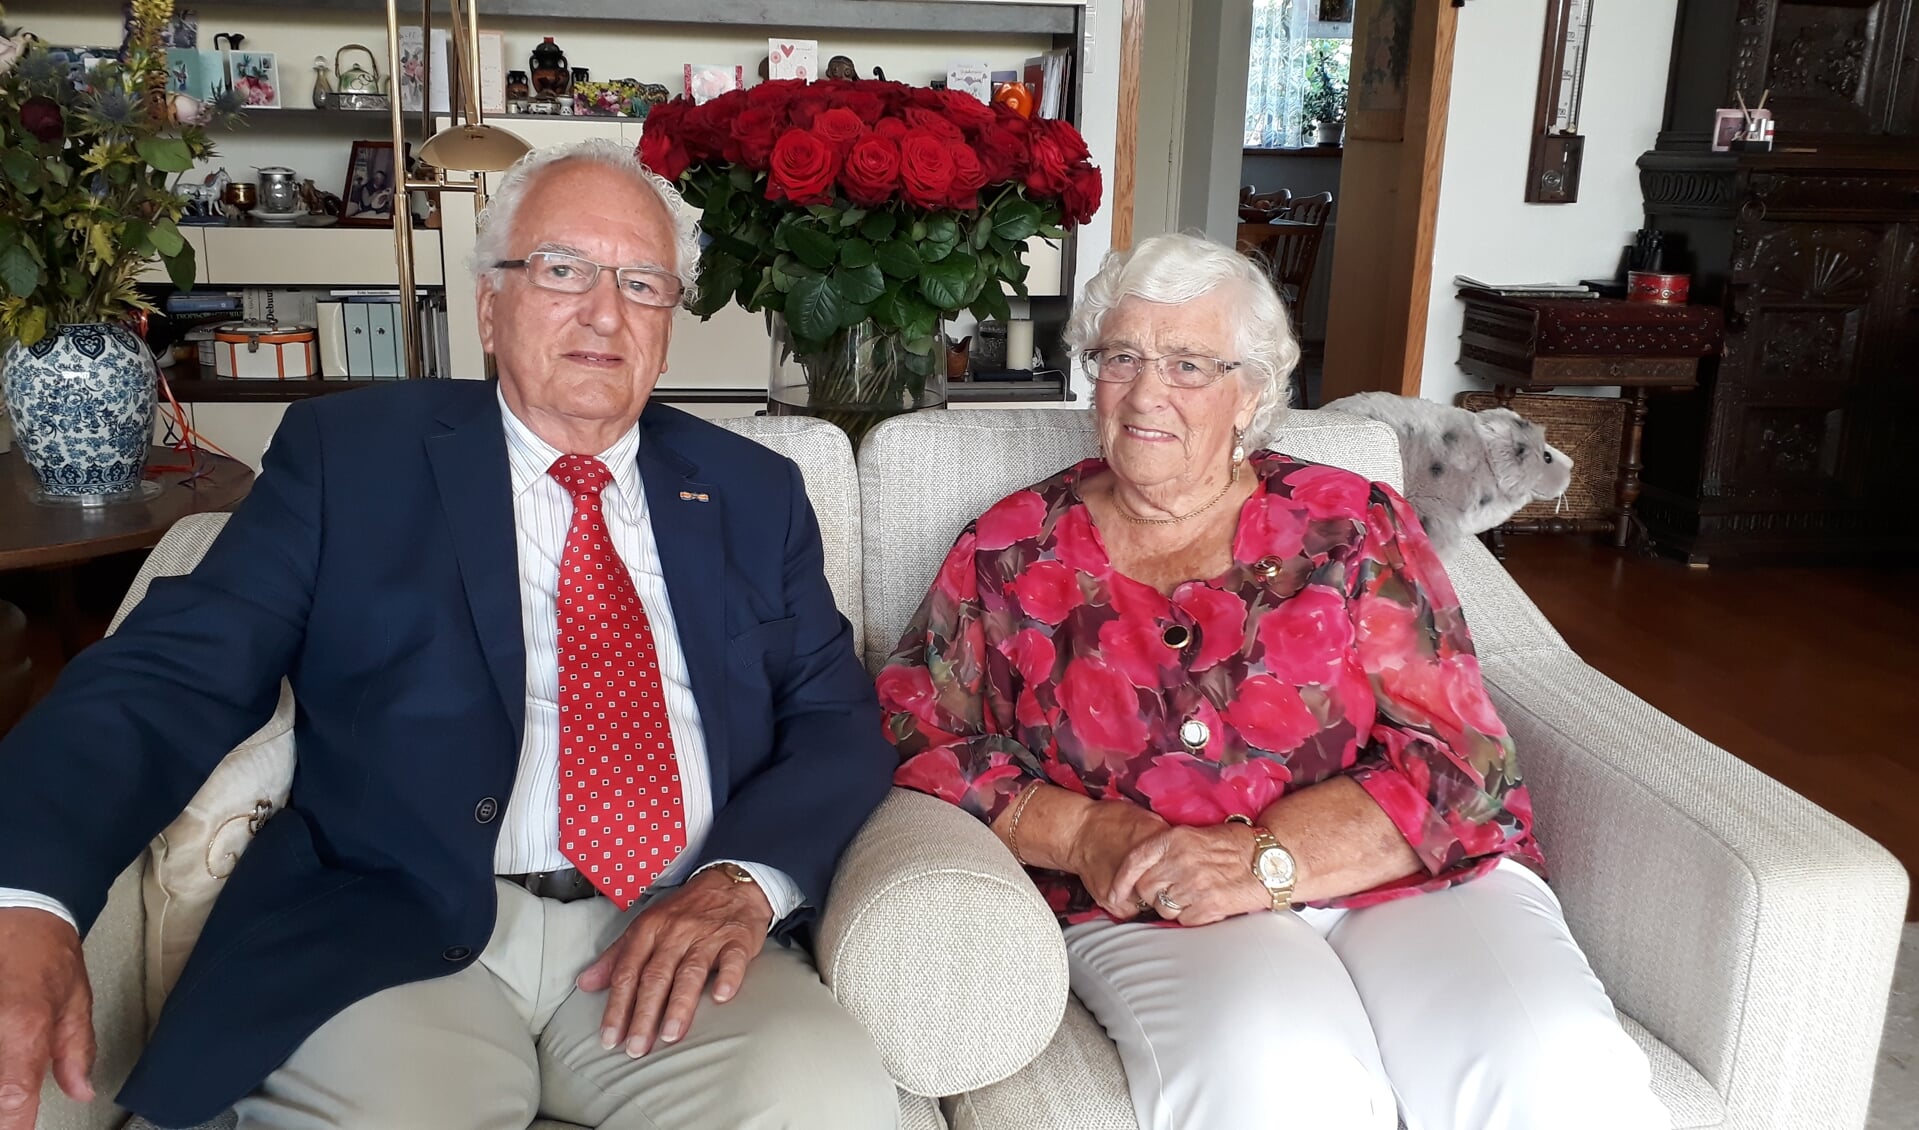 Zestig jaar zijn Jan en Riet Hofstra getrouwd, dat vraagt om een imposante bos rozen.